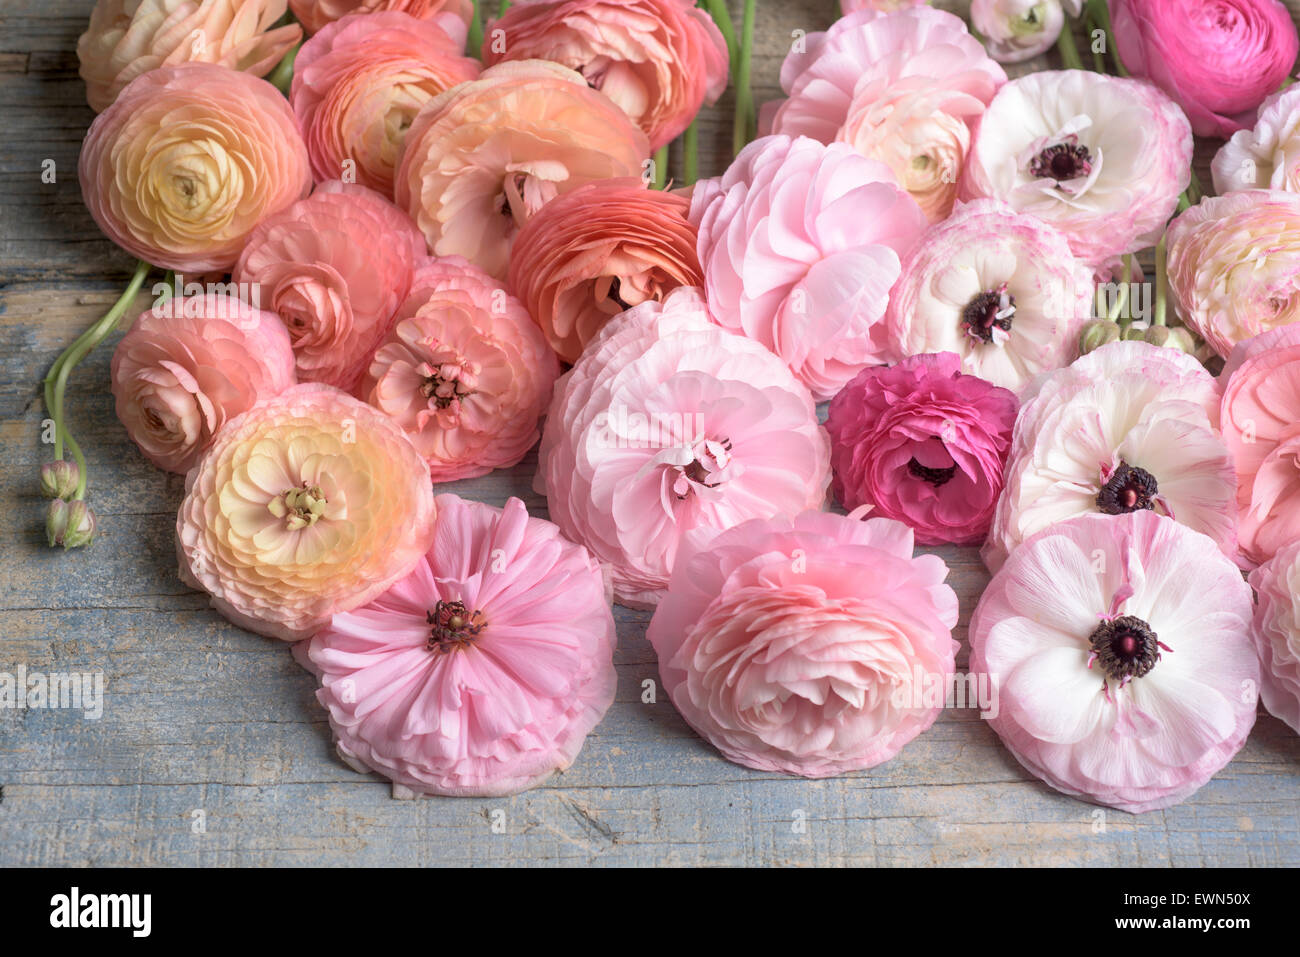 Fotografía cenital de ranúnculos Multicolores flores Foto de stock